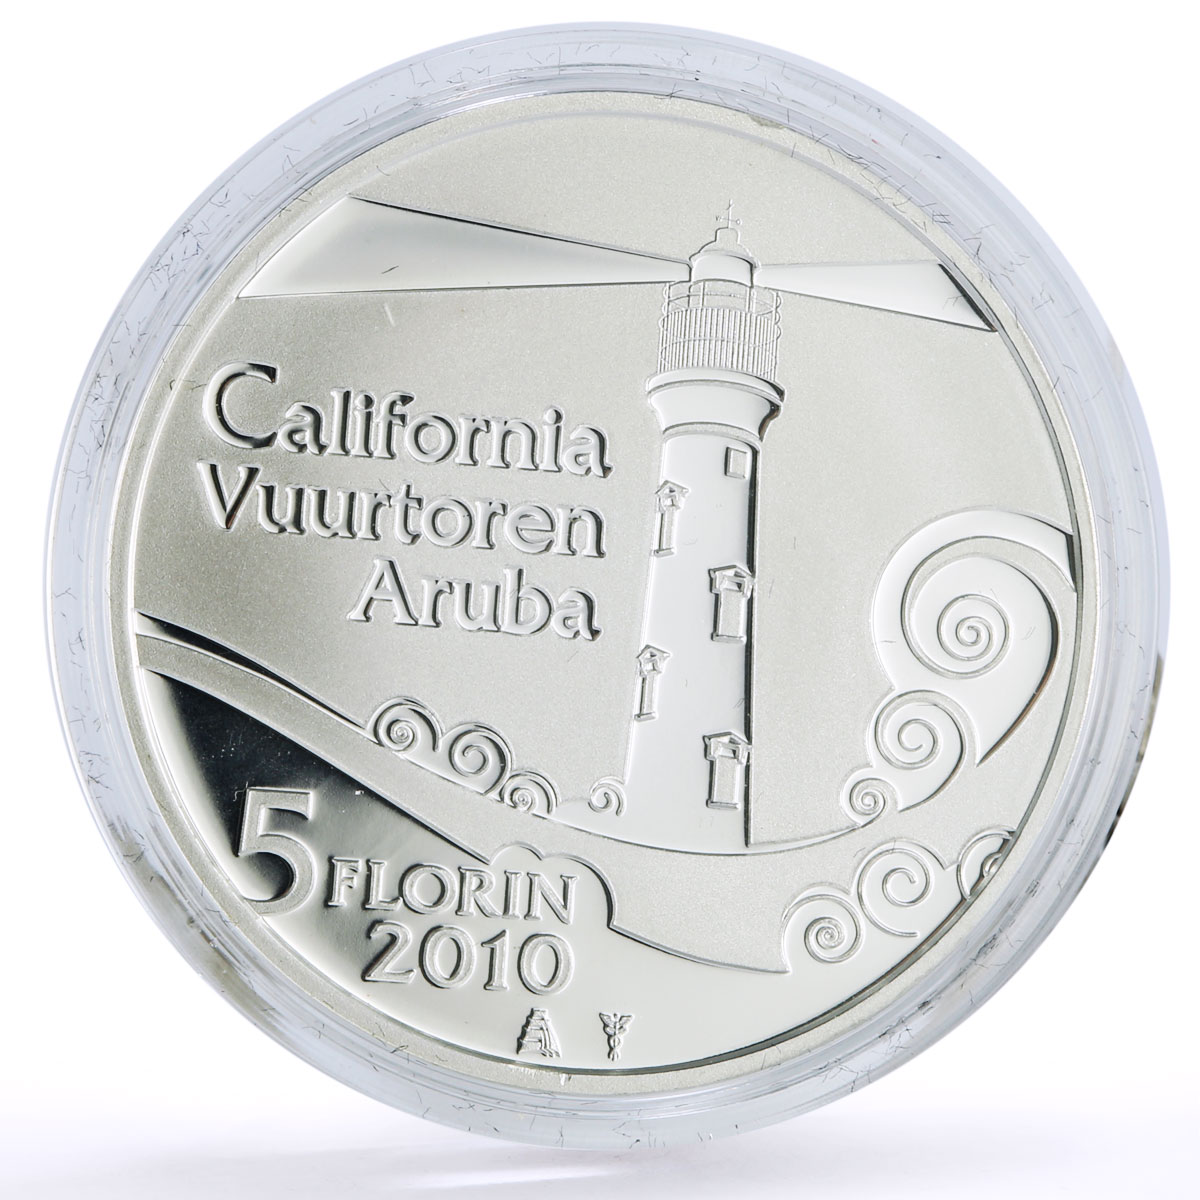 Netherlands Aruba 5 florin Seafaring California Lighthouse silver coin 2010